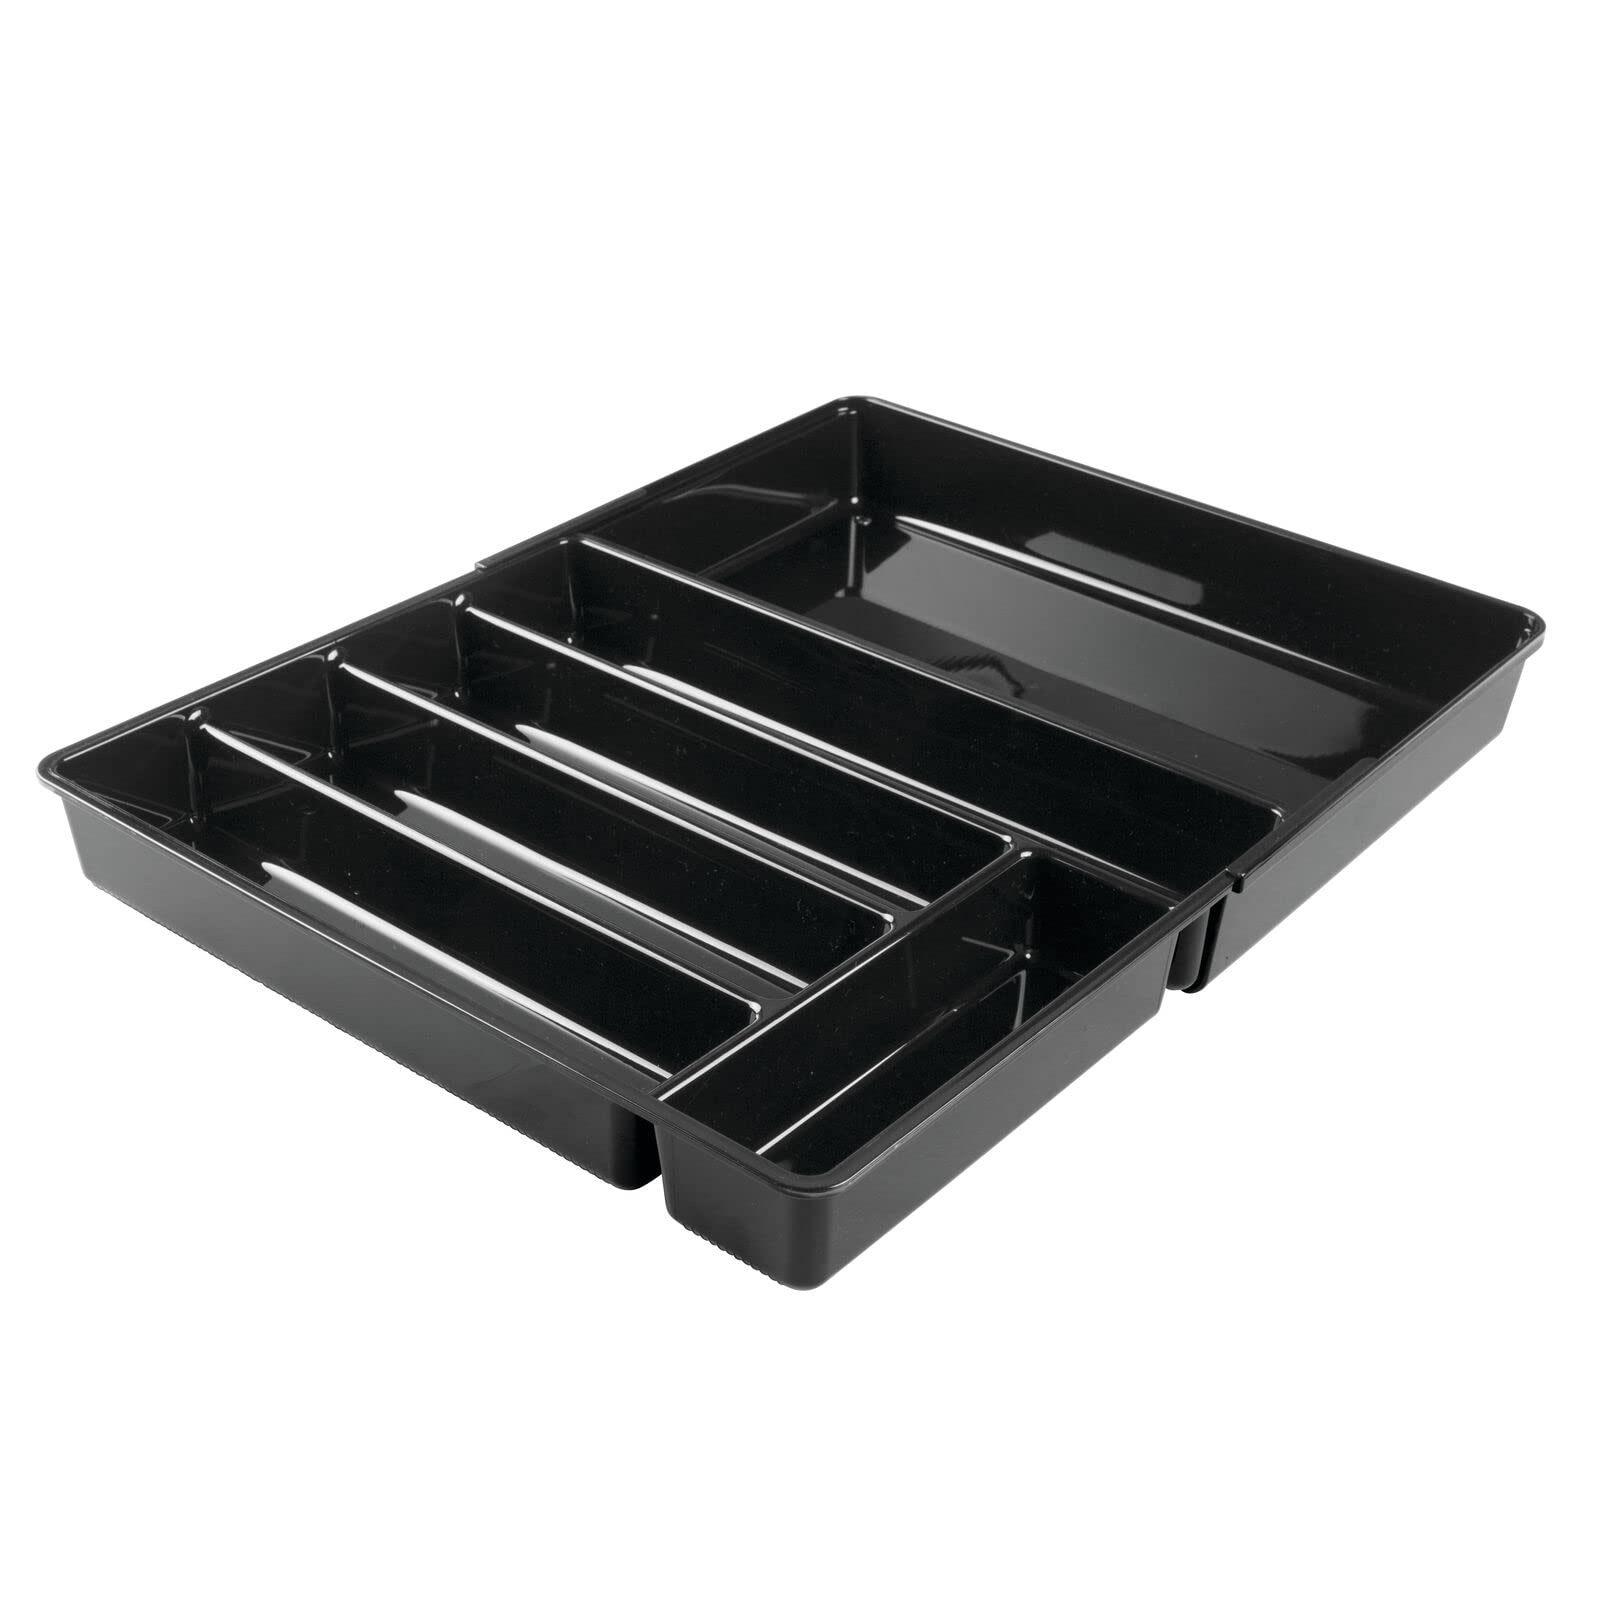 mDesign rutschfester Besteckkasten mit sechs Fächern – ausziehbarer Besteckeinsatz für Schubladen ordnet Küchenutensilien – Schubladenorganizer für diverse Utensilien nutzbar – schwarz